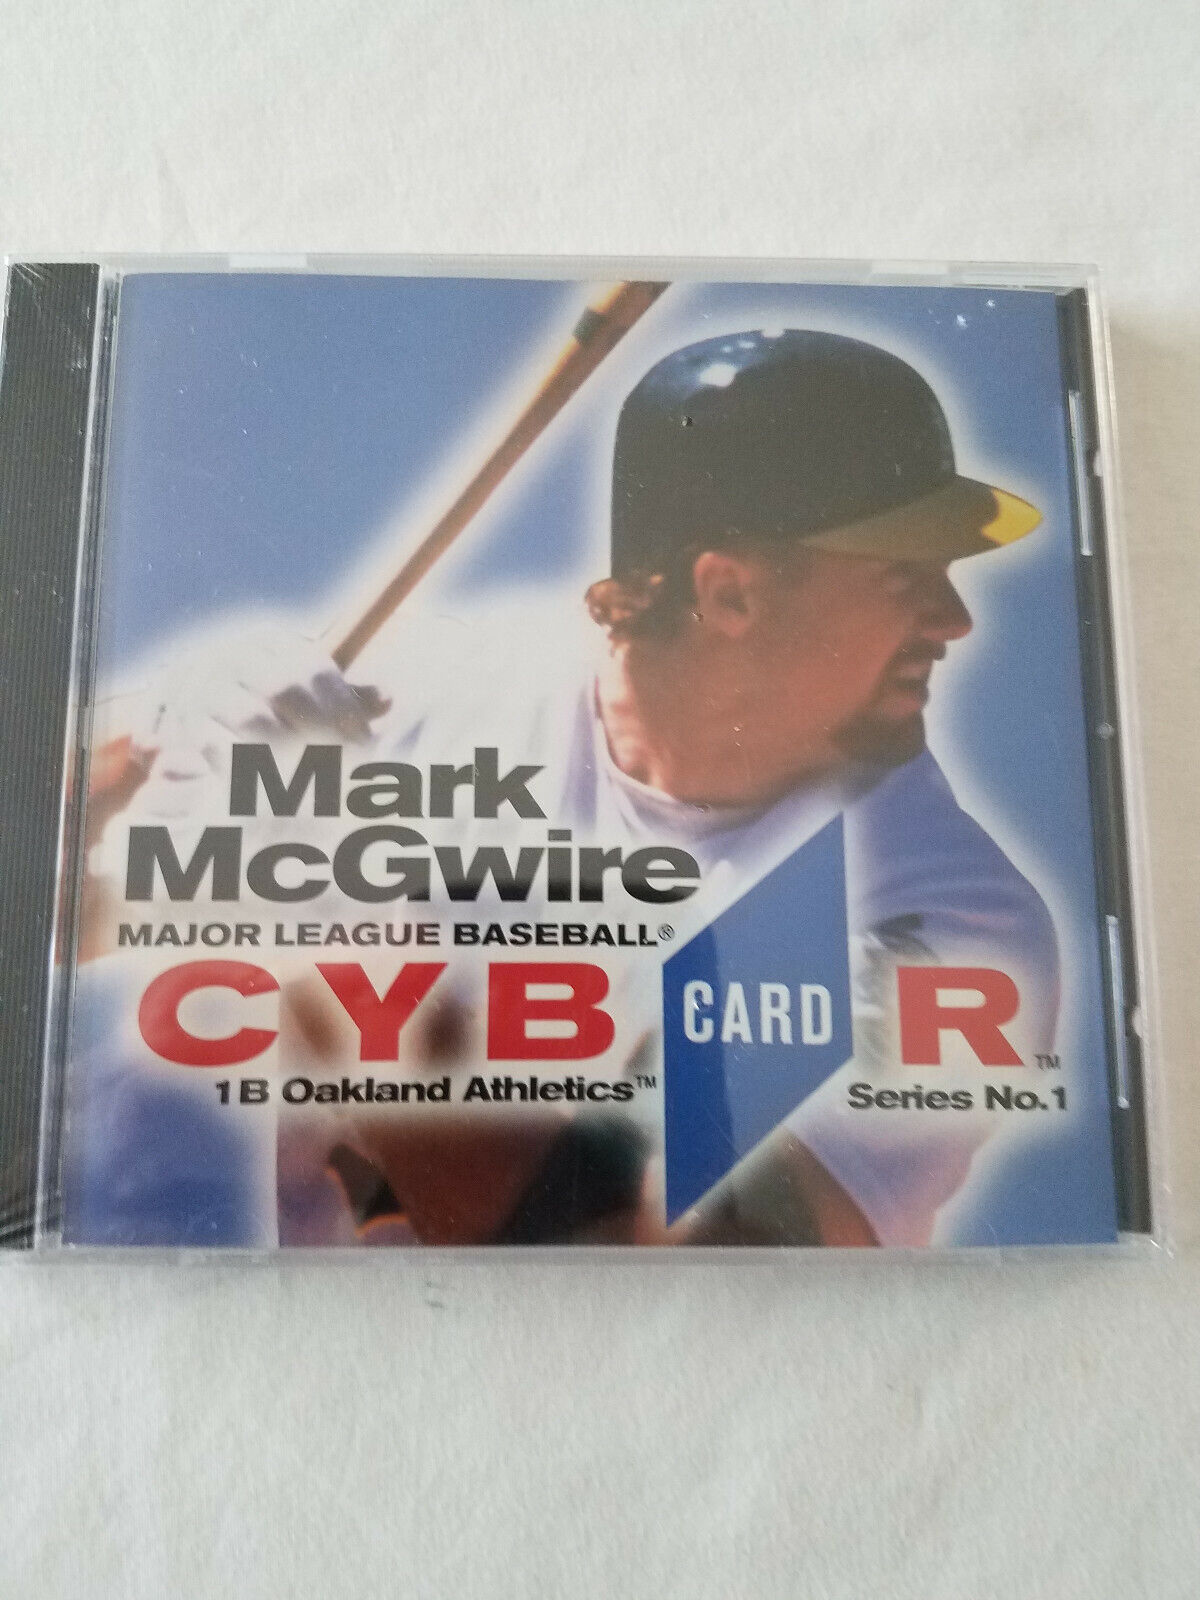 Vintage CYB Card R MARK MCGWIRE  Factory Sealed MLB CYBERCARD